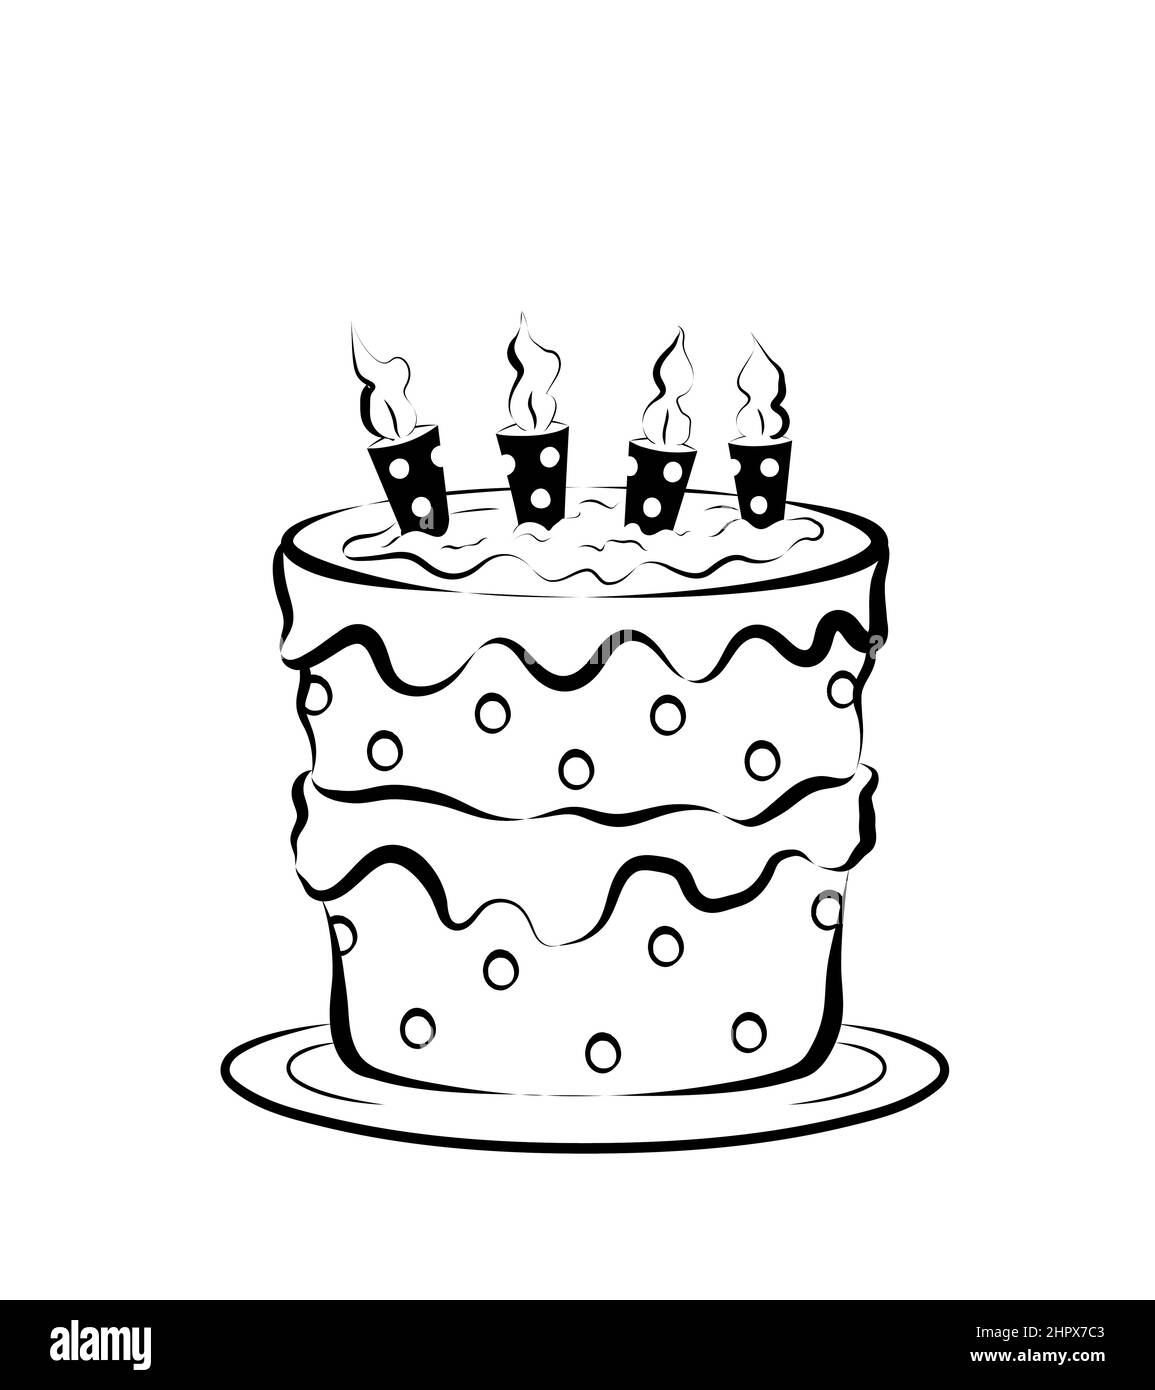 torta di compleanno in bianco e nero per bambini con quattro candele. illustrazione isolata su sfondo bianco Foto Stock